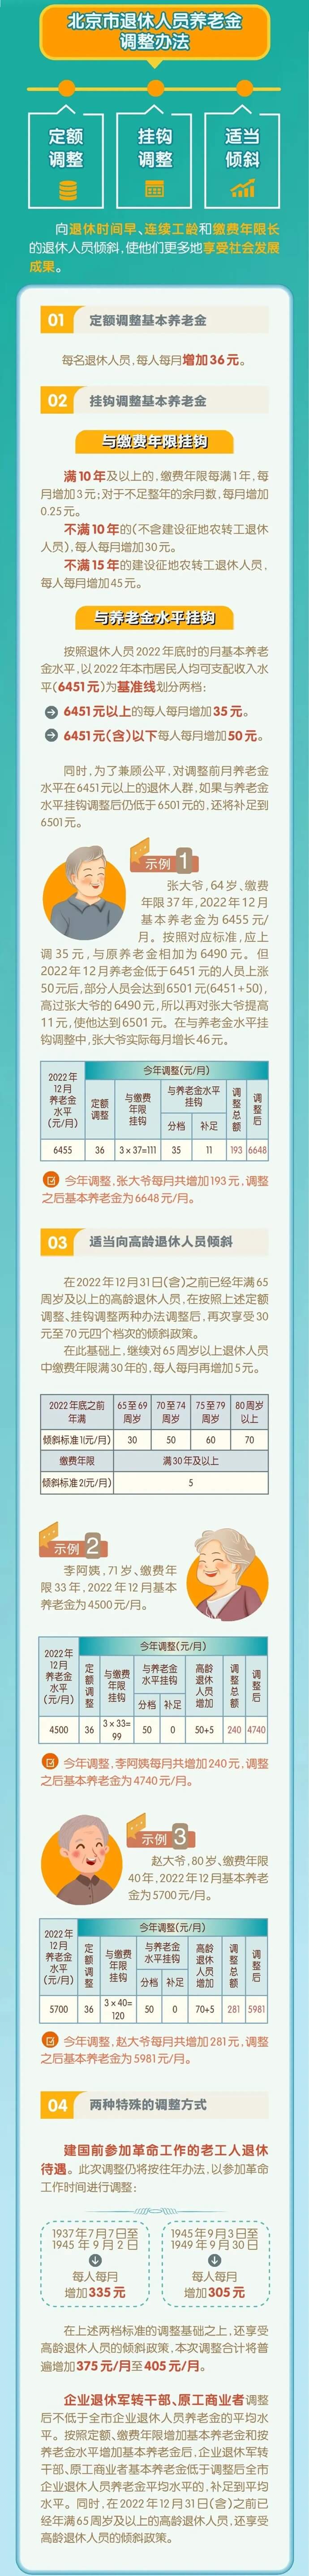 北京市退休人员养老金调整办法 (1)